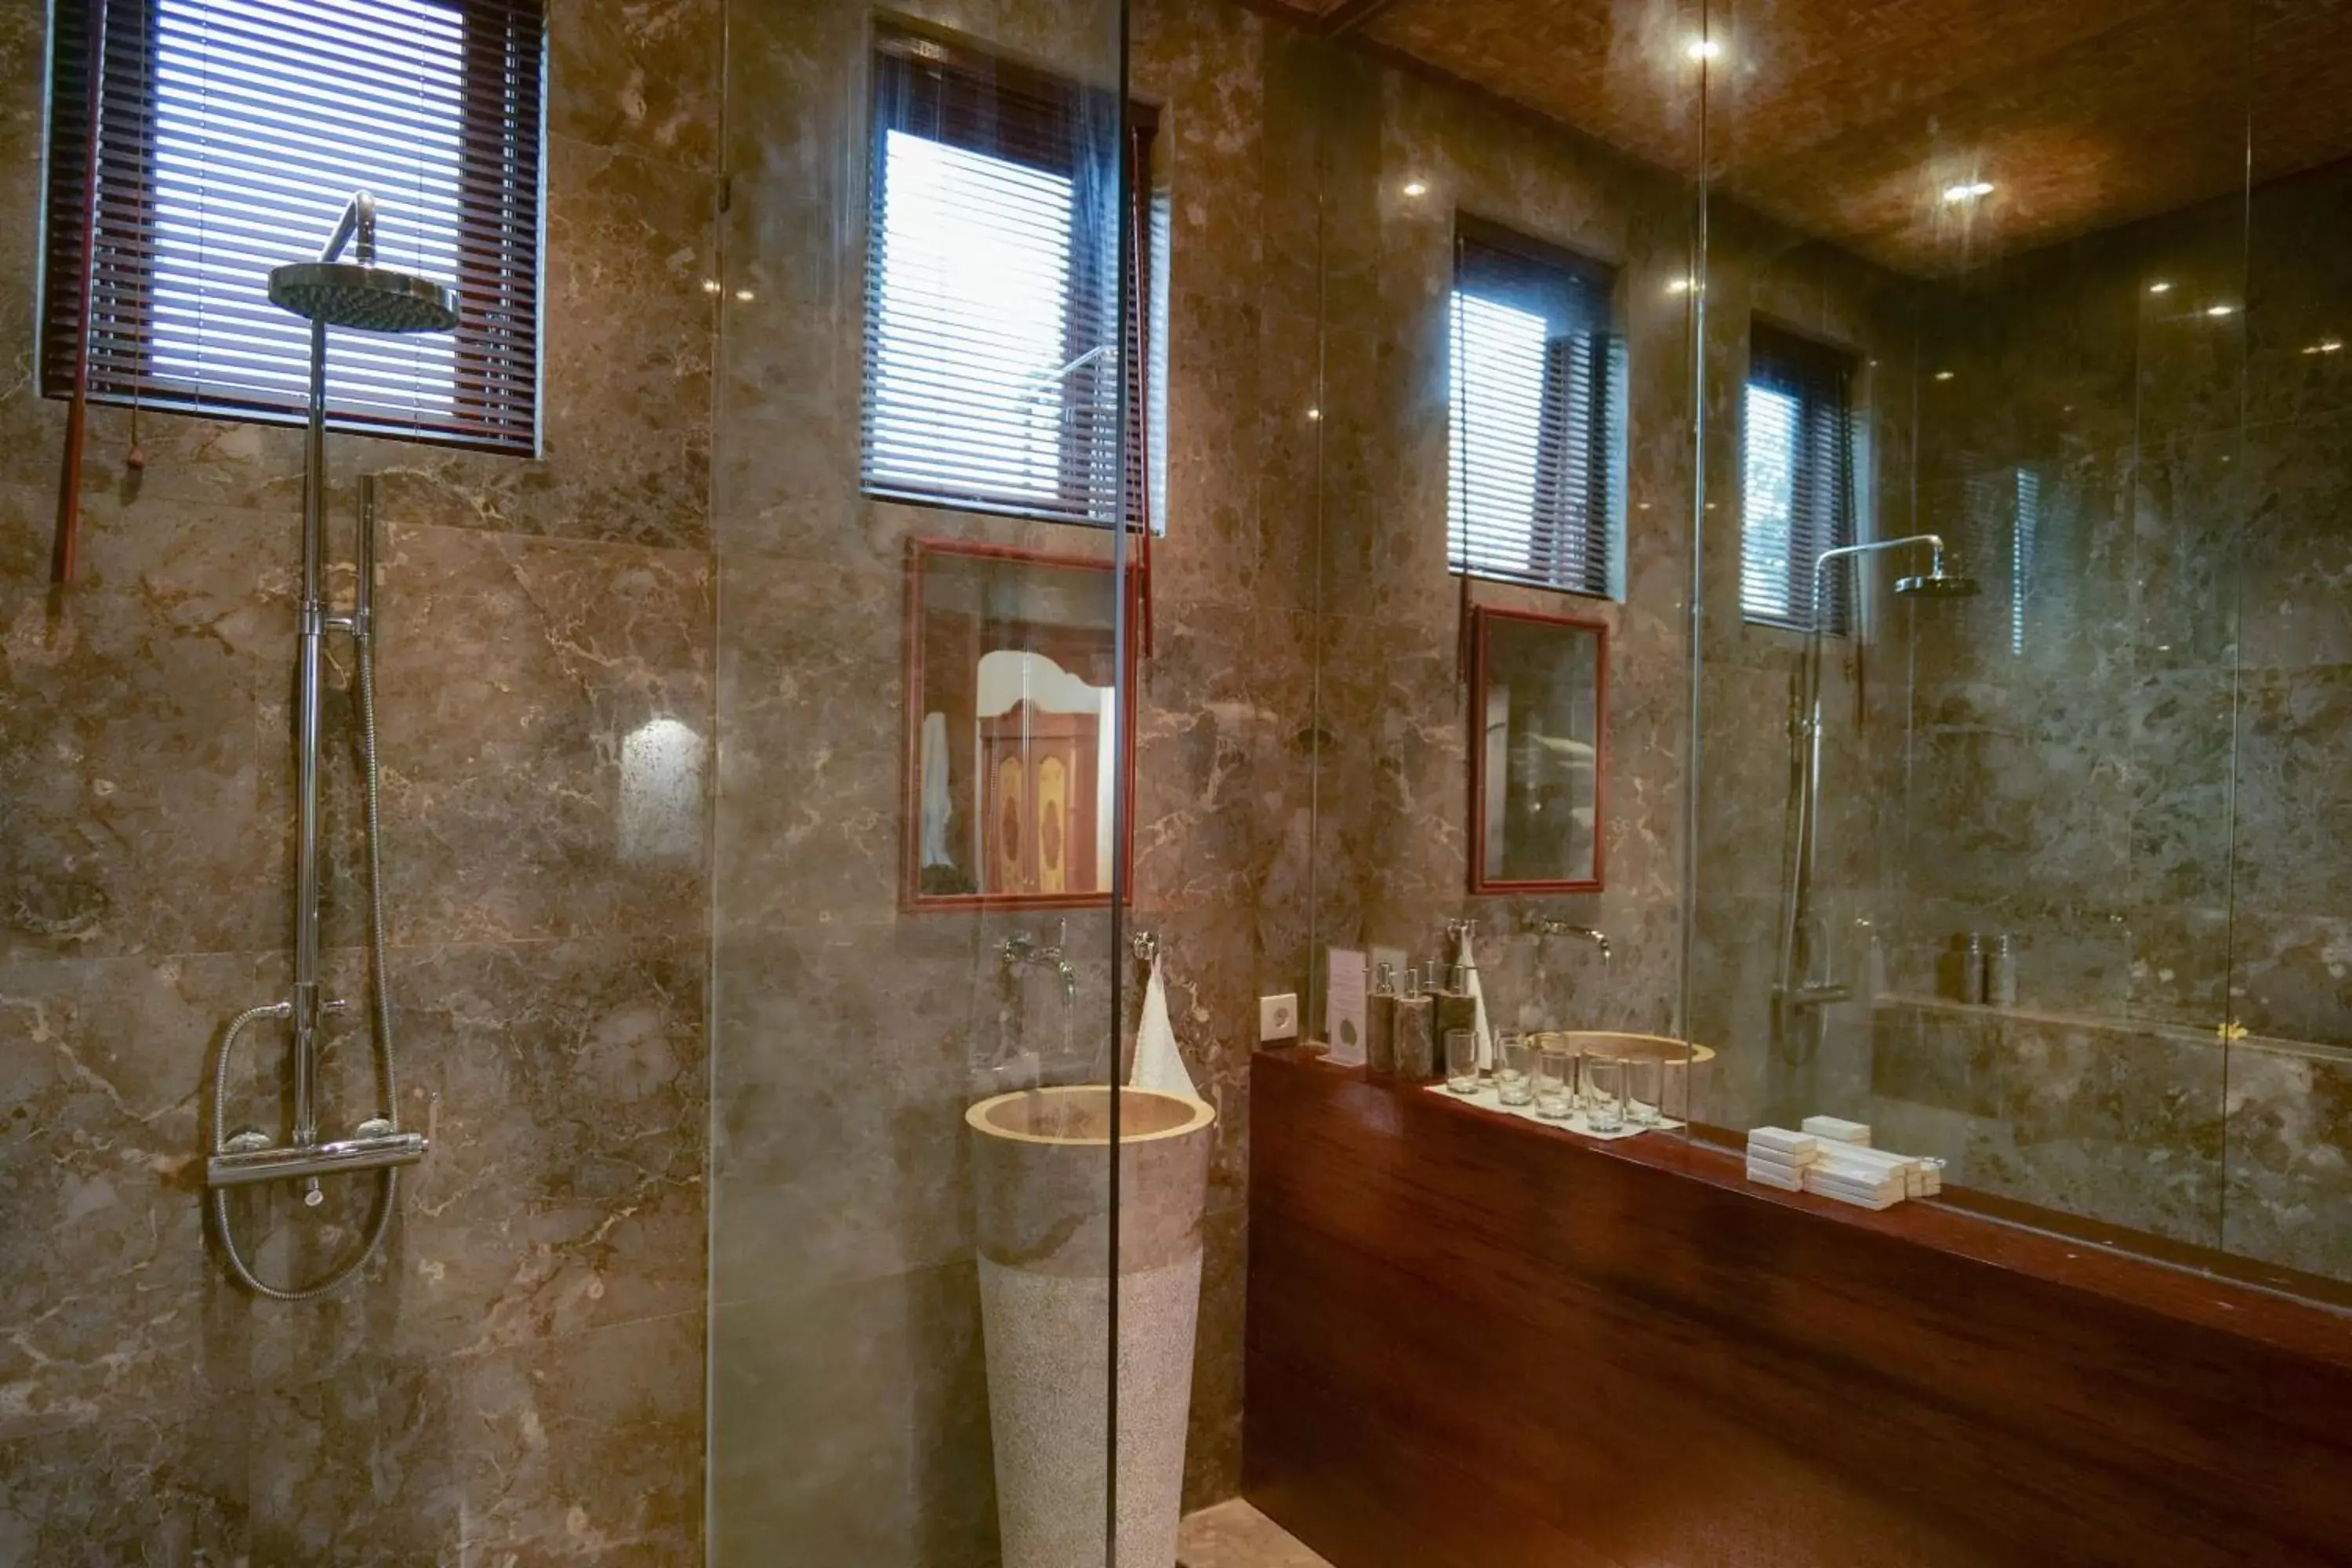 Shower, Bathroom in Gayatri